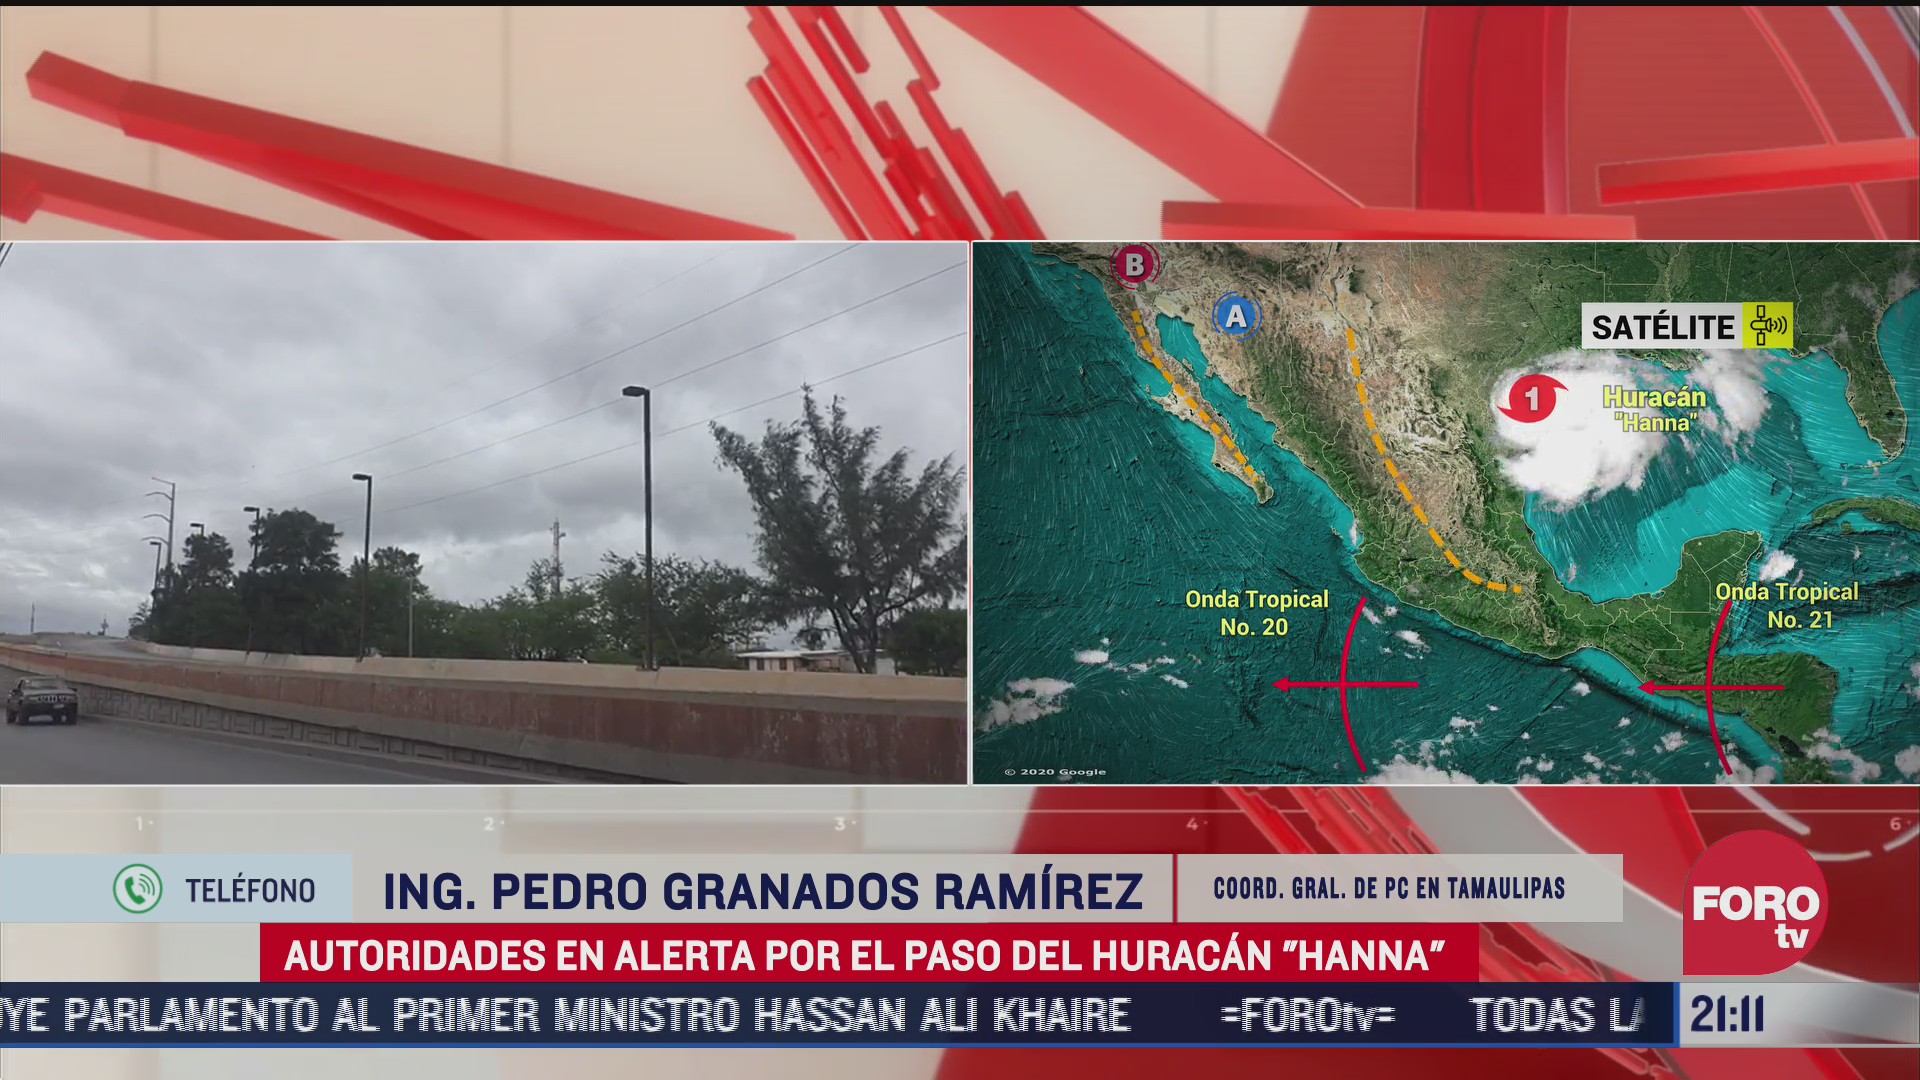 FOTO: 25 de julio 2020, huracan hanna aun no causa estragos en el estado de tamaulipas